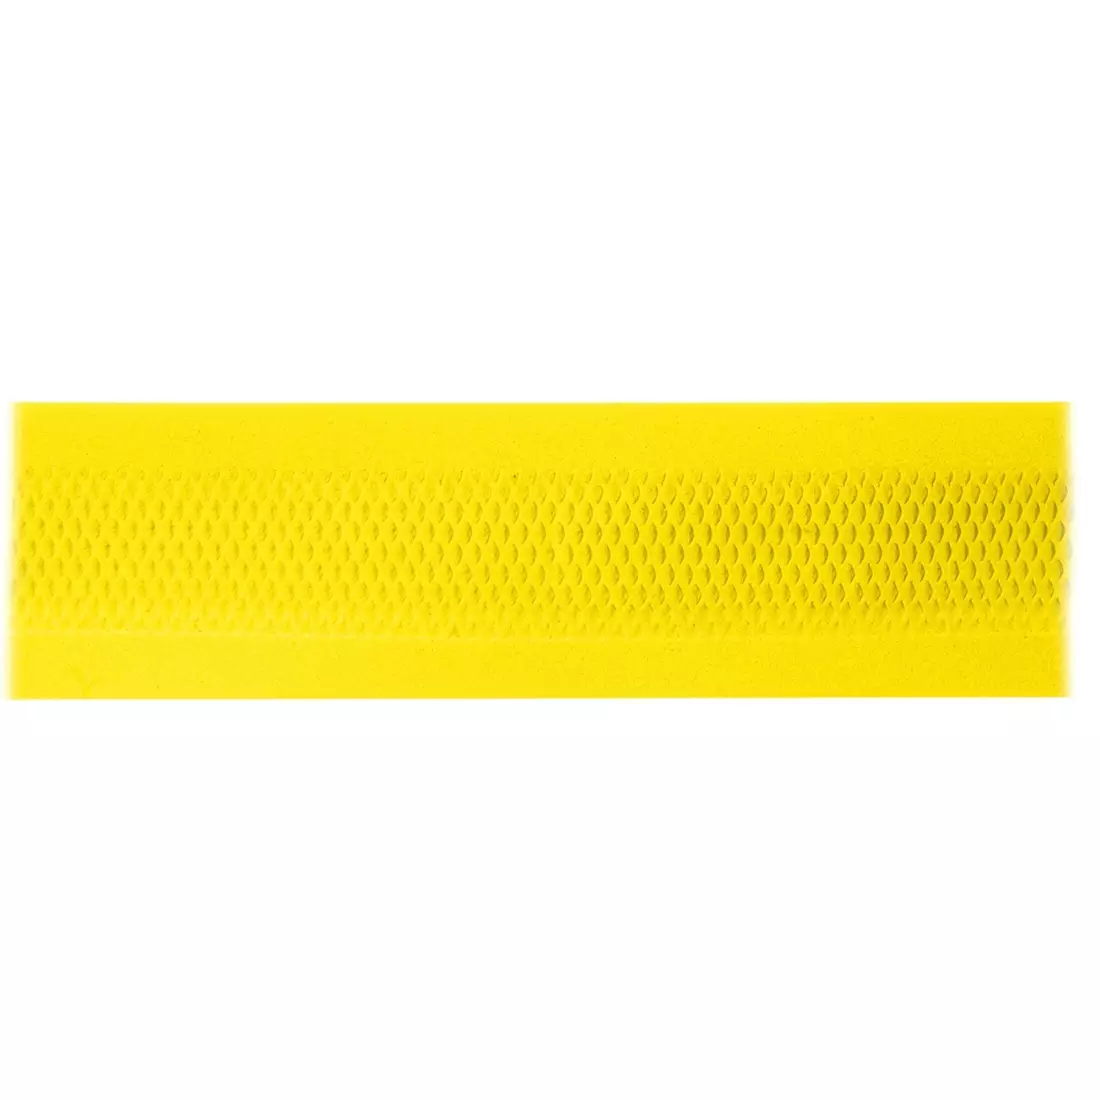 FORCE EVA perforovaná páska na řídítka yellow